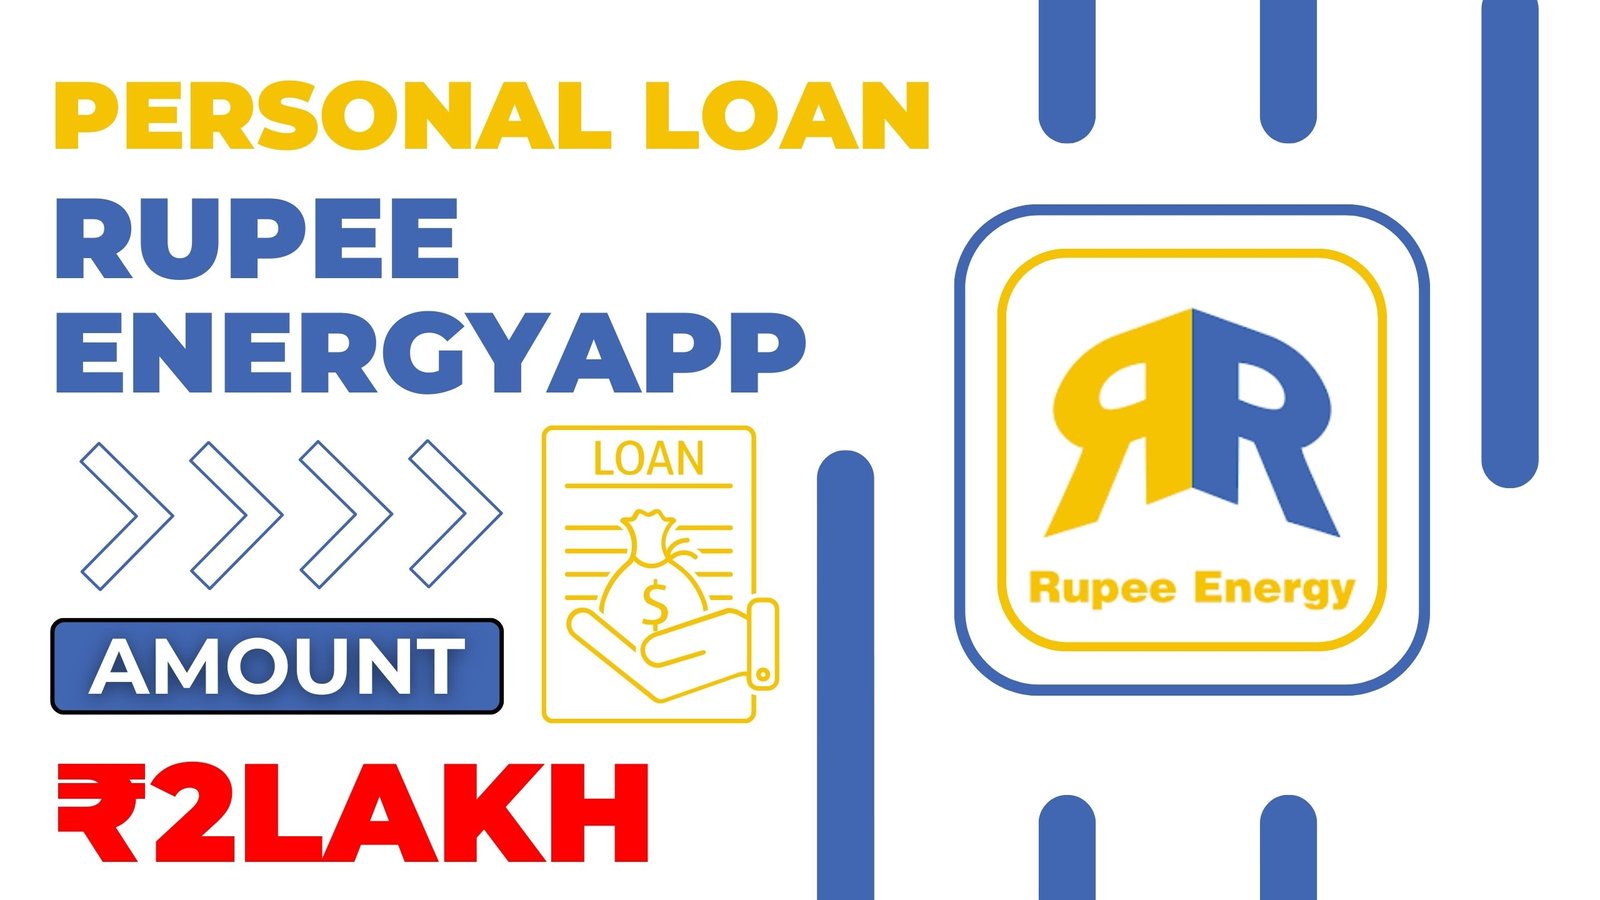 Rupee Energy Loan App Loan Amount